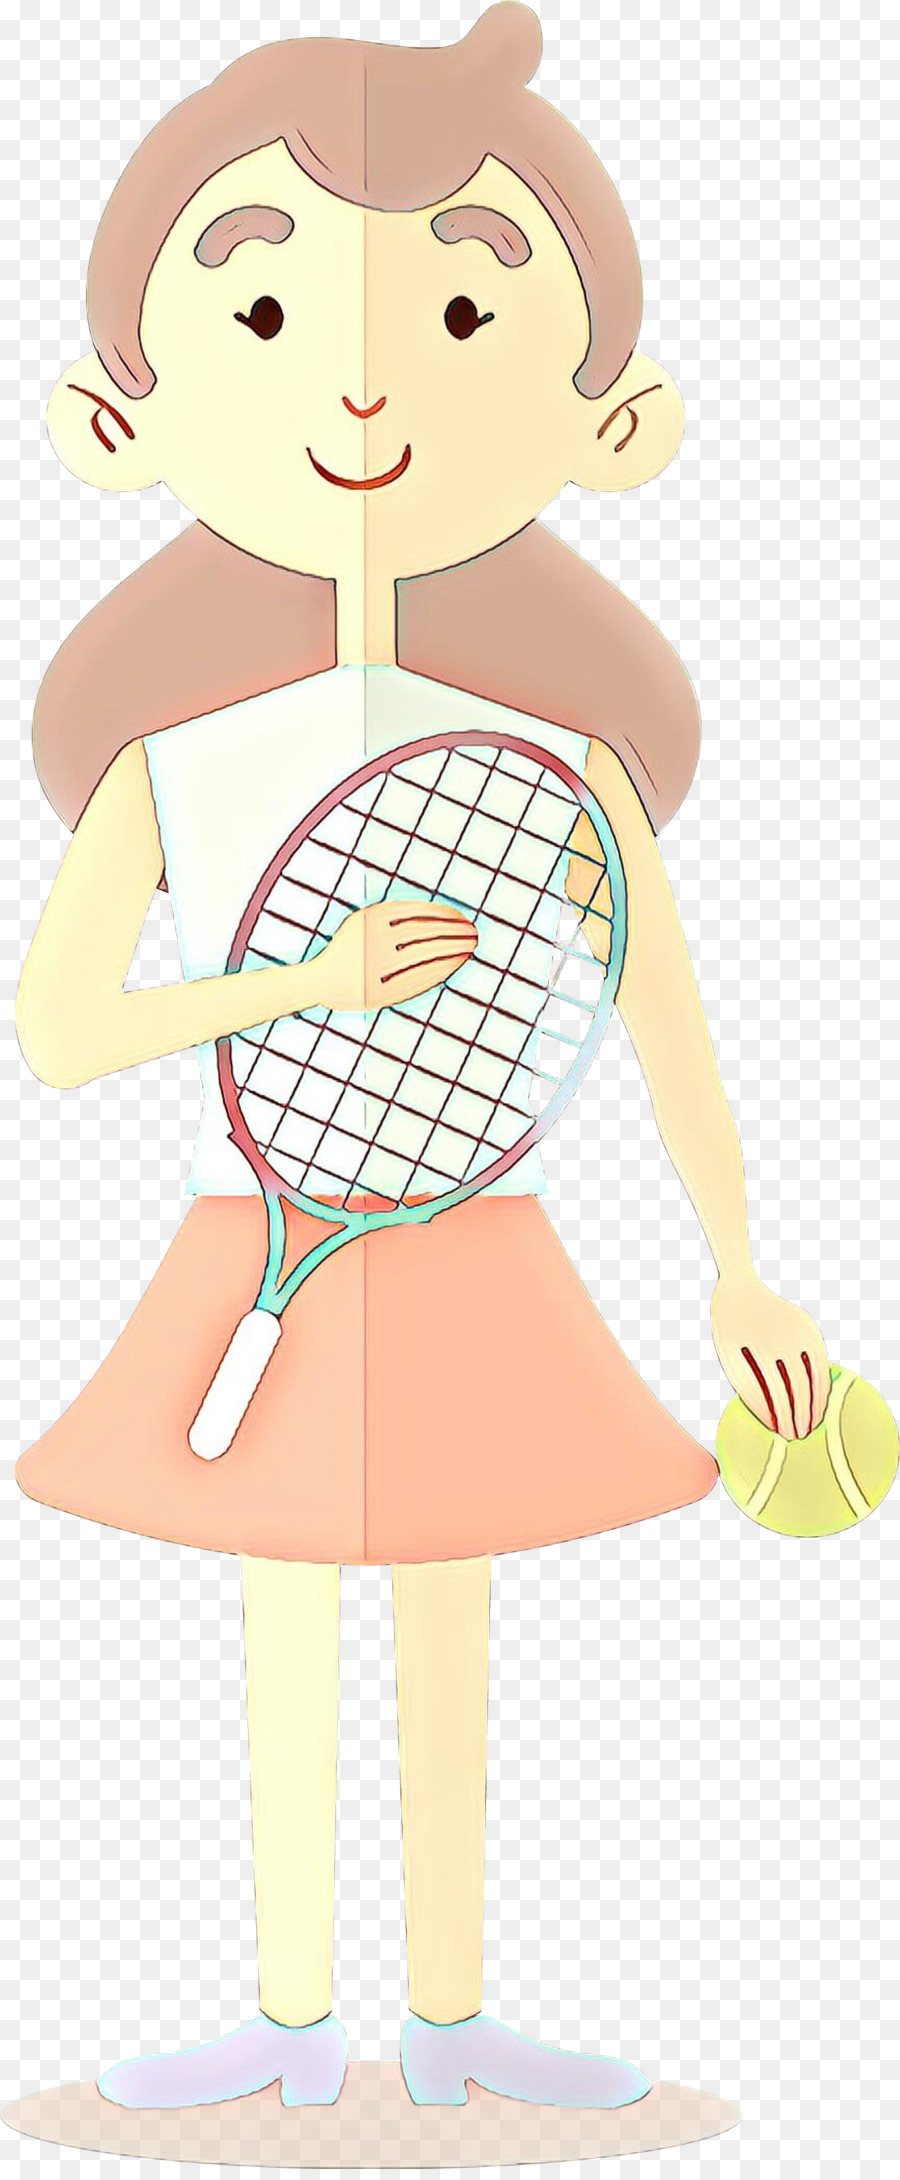 tennis racket racket cartoon tennis tennis player